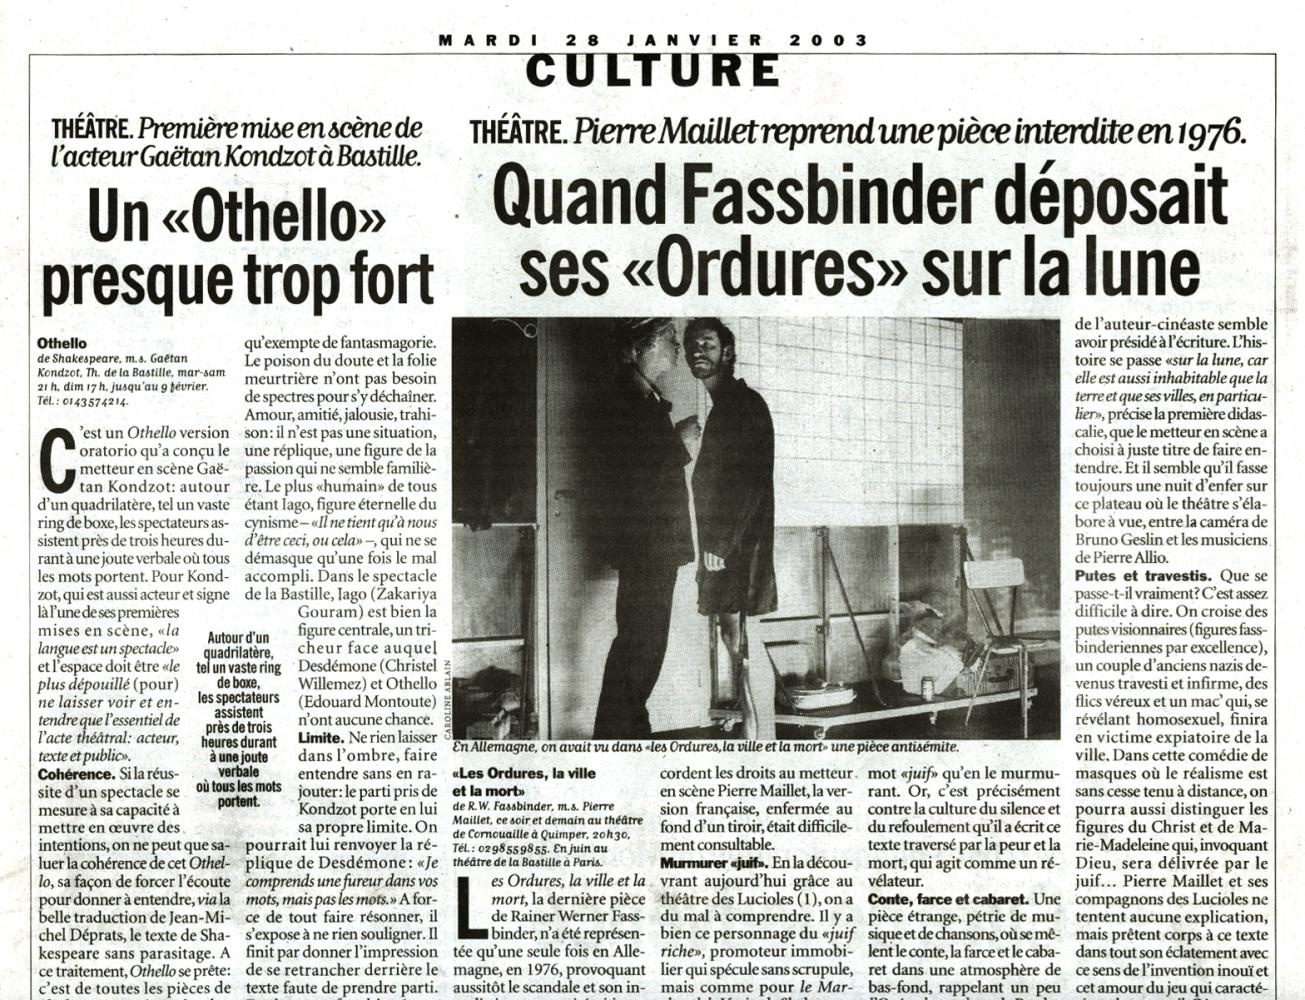 Les Ordures, la ville et la mort / Les Lucioles / Libération / Janv 2003